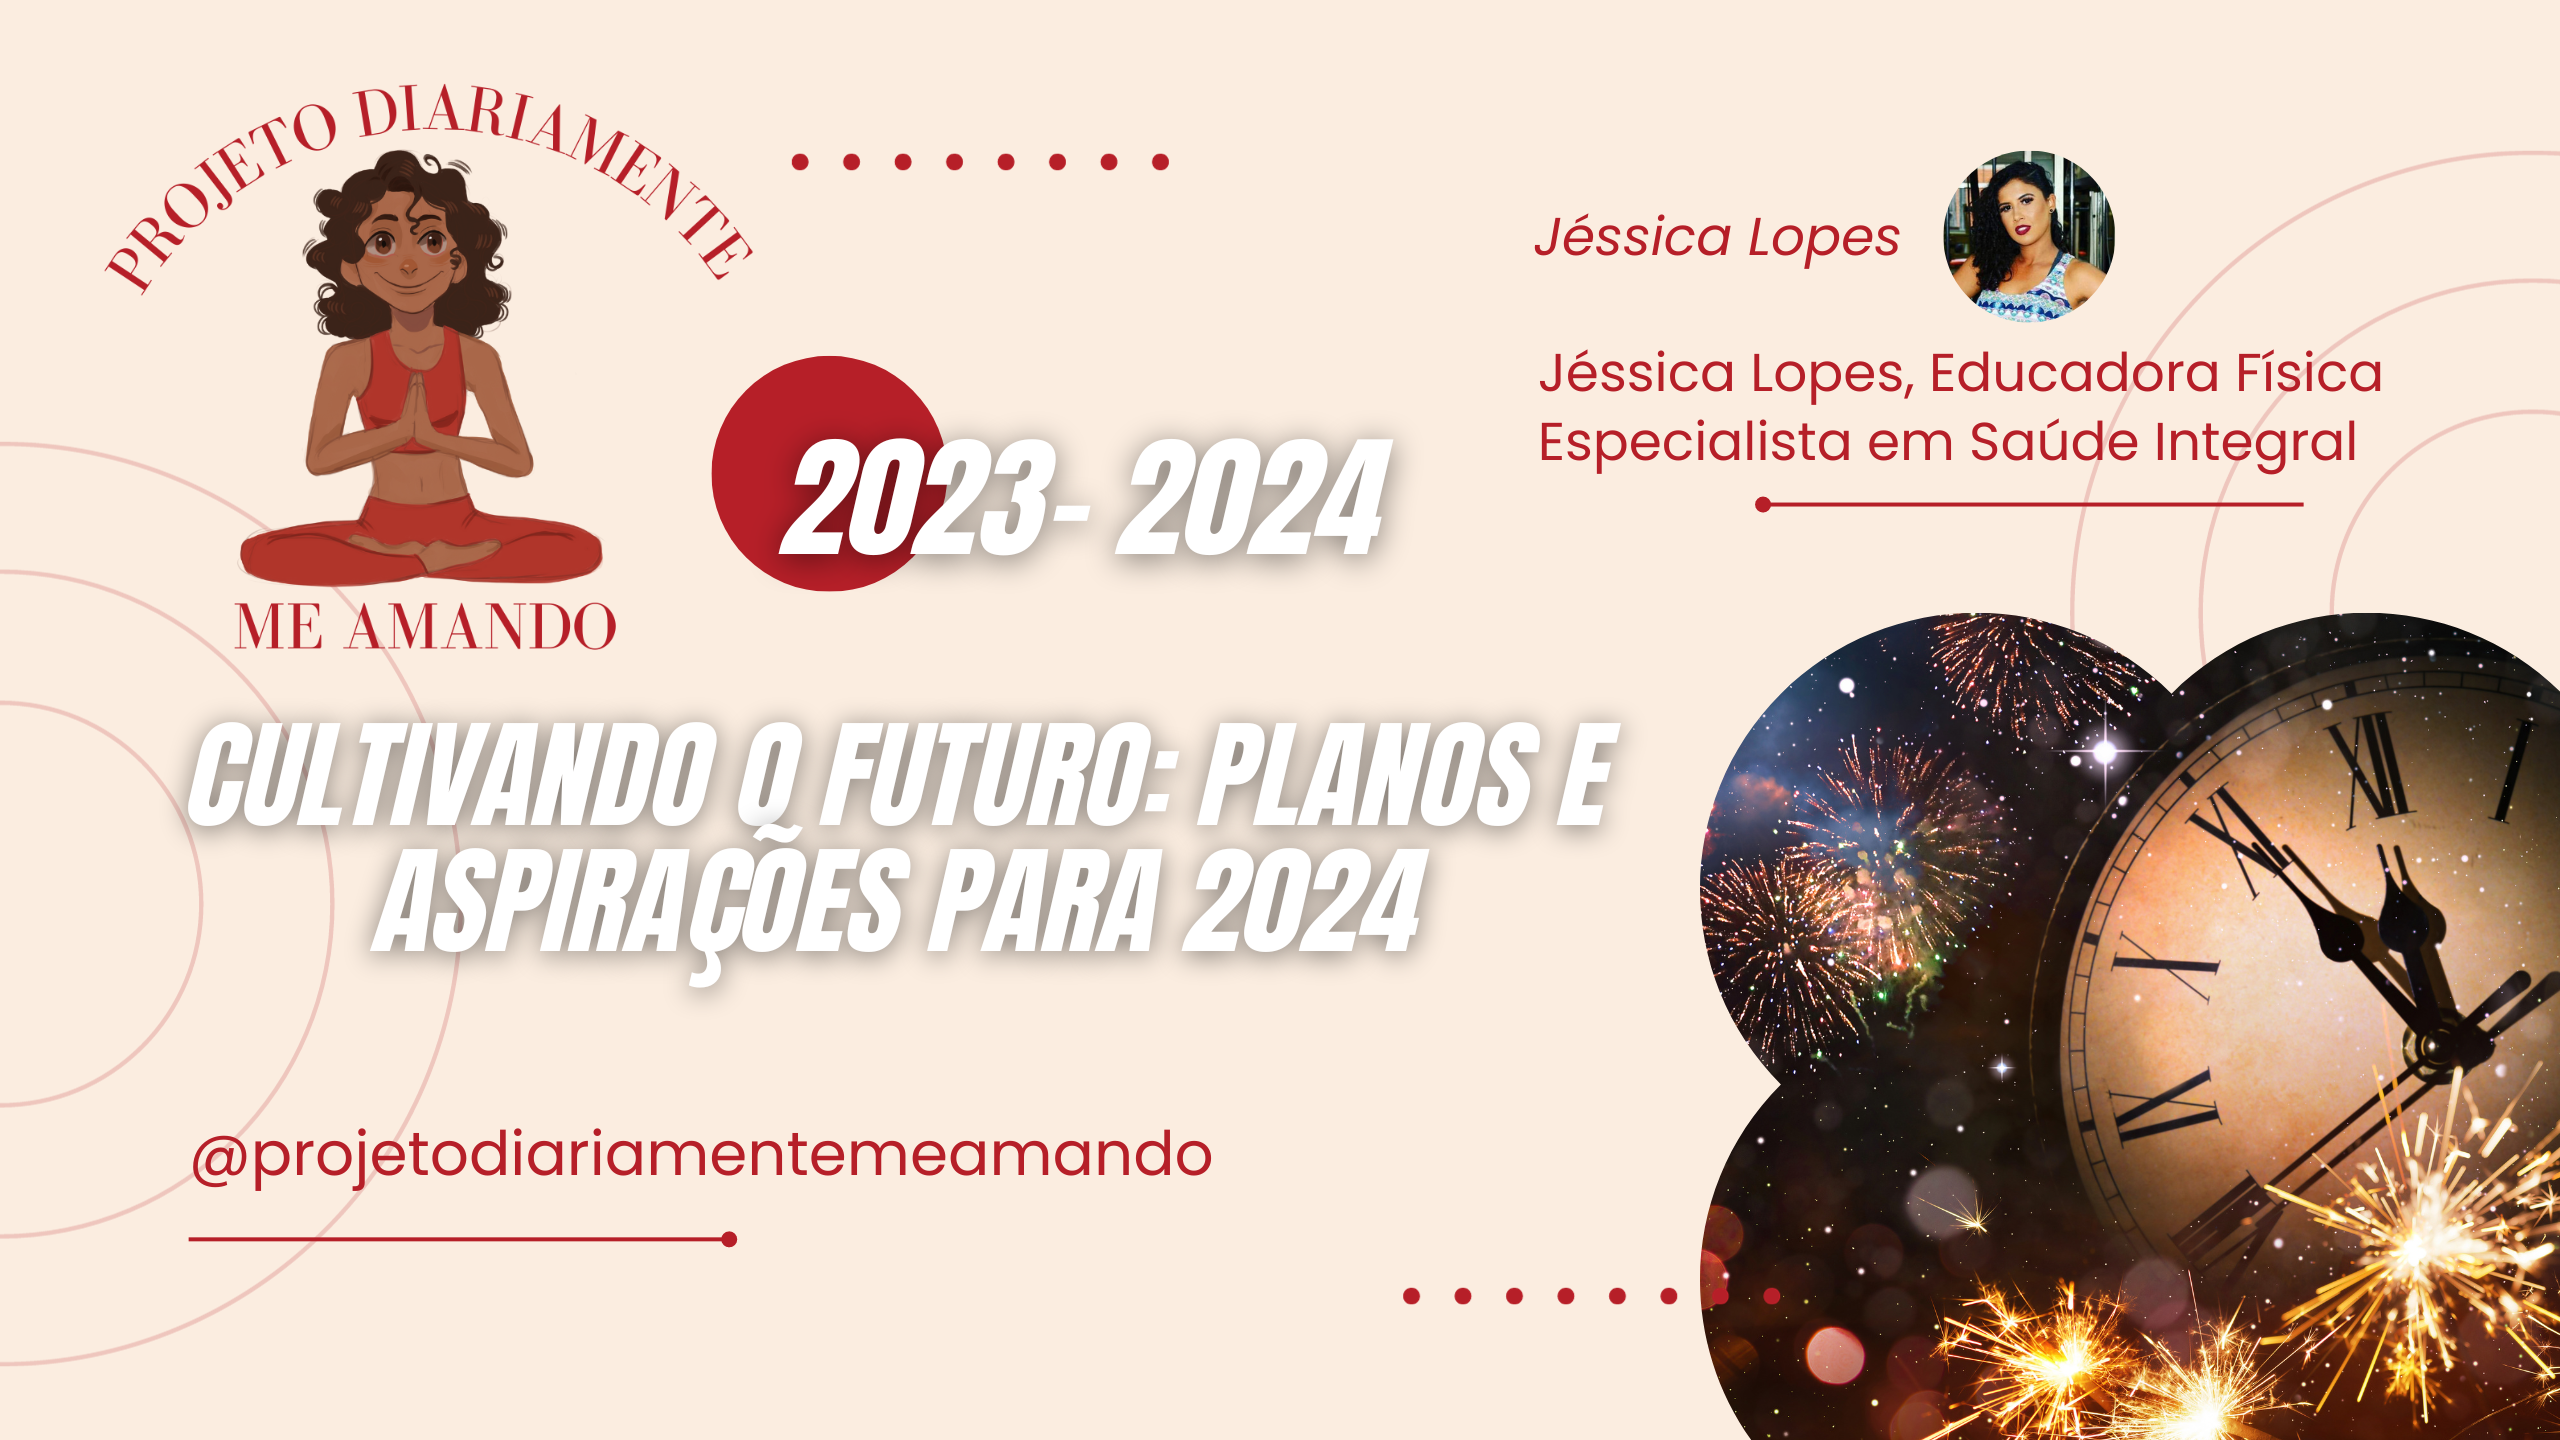 CULTIVANDO O FUTURO: PLANOS E ASPIRAÇÕES PARA 2024